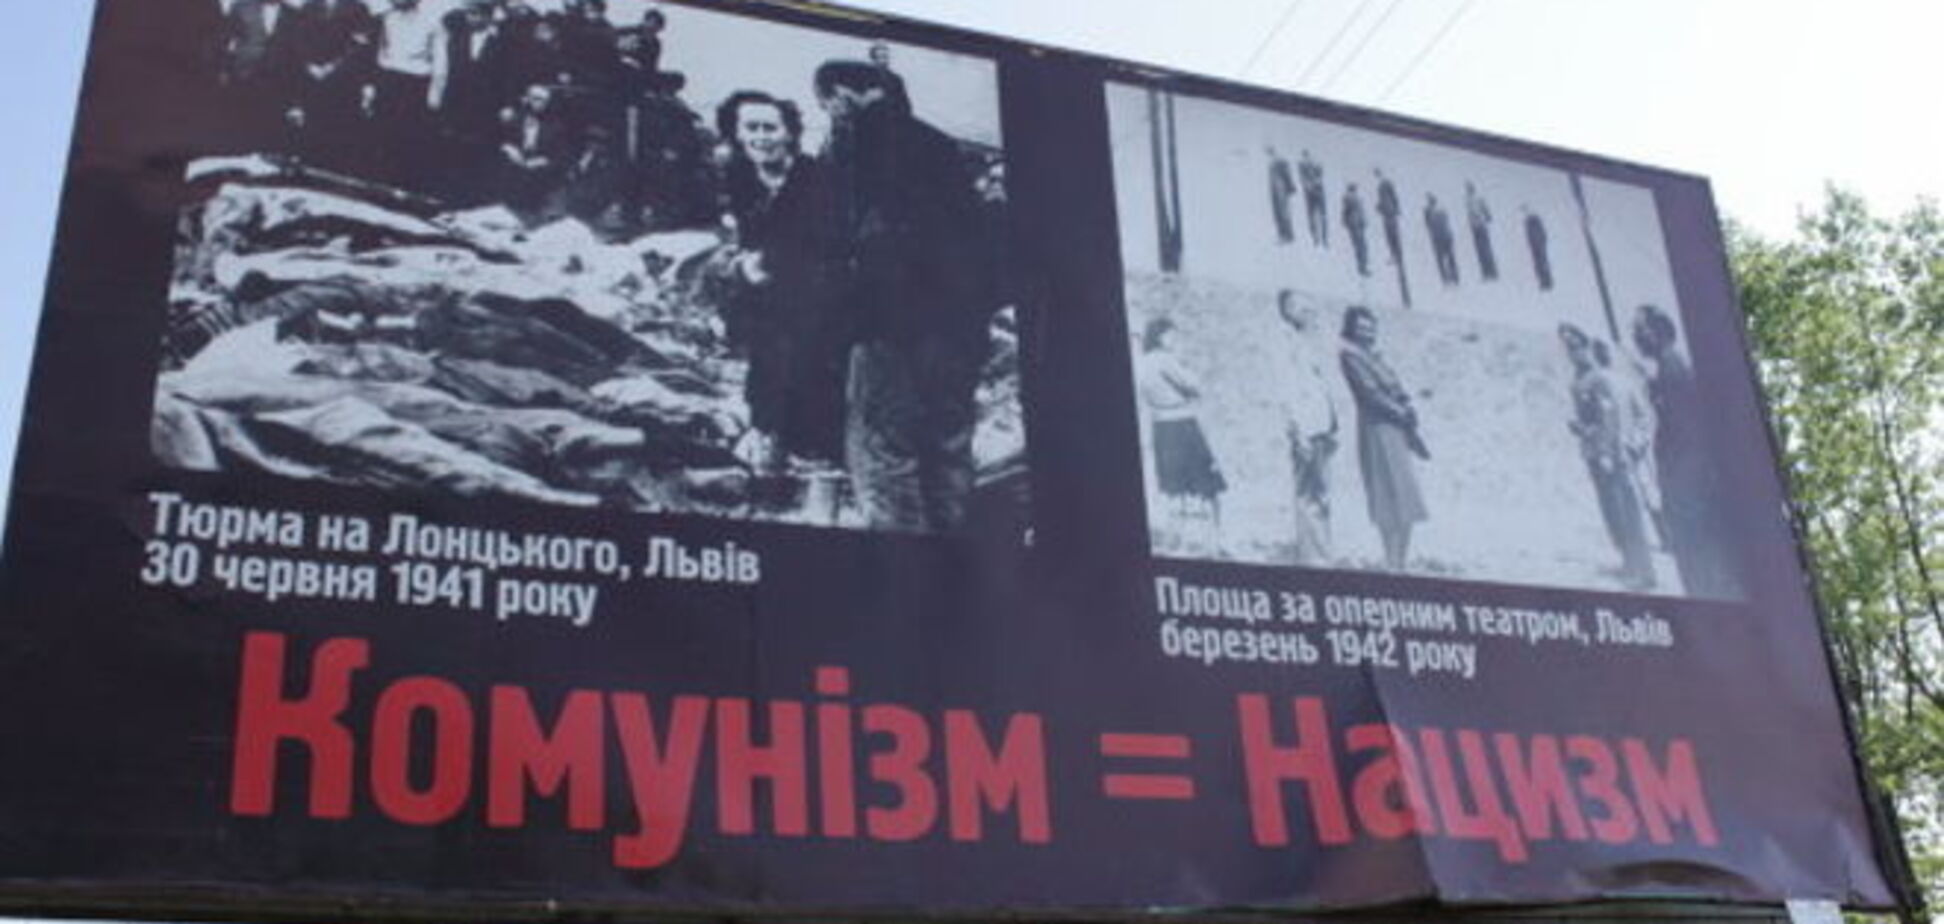 Россия растеряна из-за закона о коммунизме: как объяснить своим 'зомби' запрет 'нацистами' нацизма